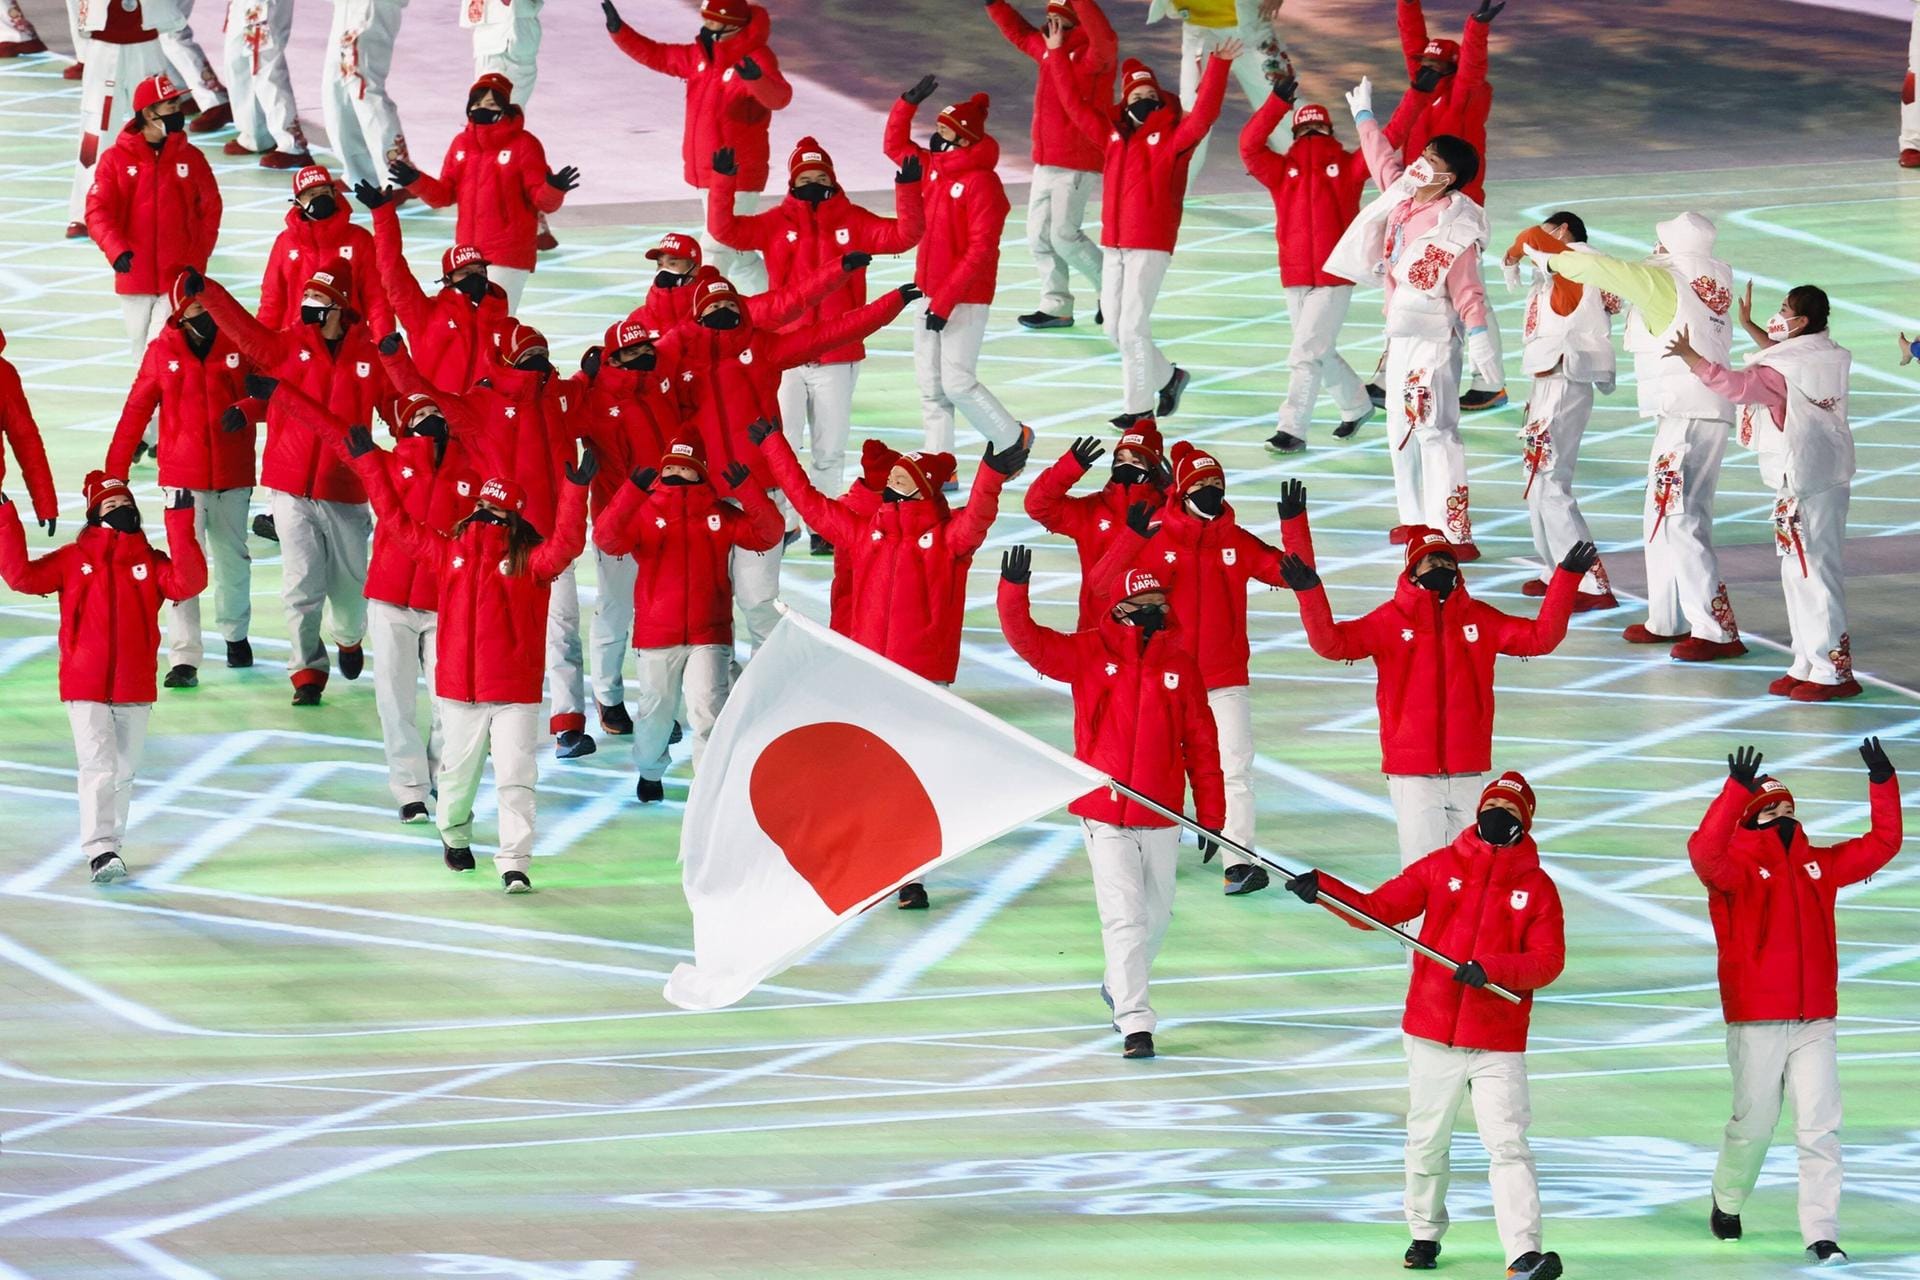 Das Gastgeberland der Olympischen Sommerspiele im vergangenen Jahr betritt das Stadion in Peking: Die japanischen Athleten jubeln dem Publikum zu.